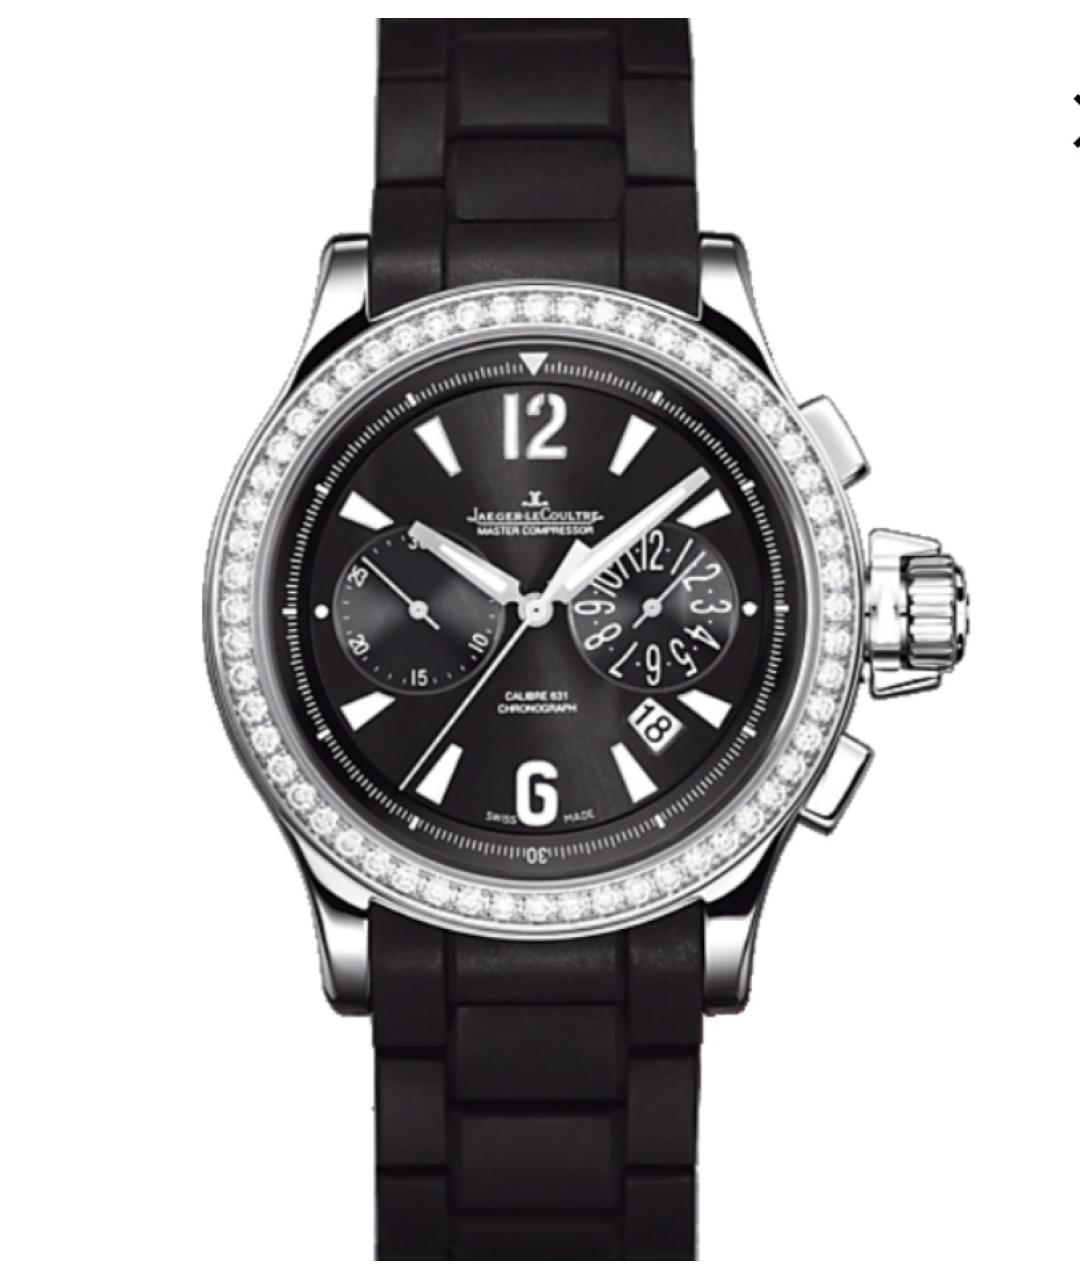 Jaeger LeCoultre Черные часы, фото 1